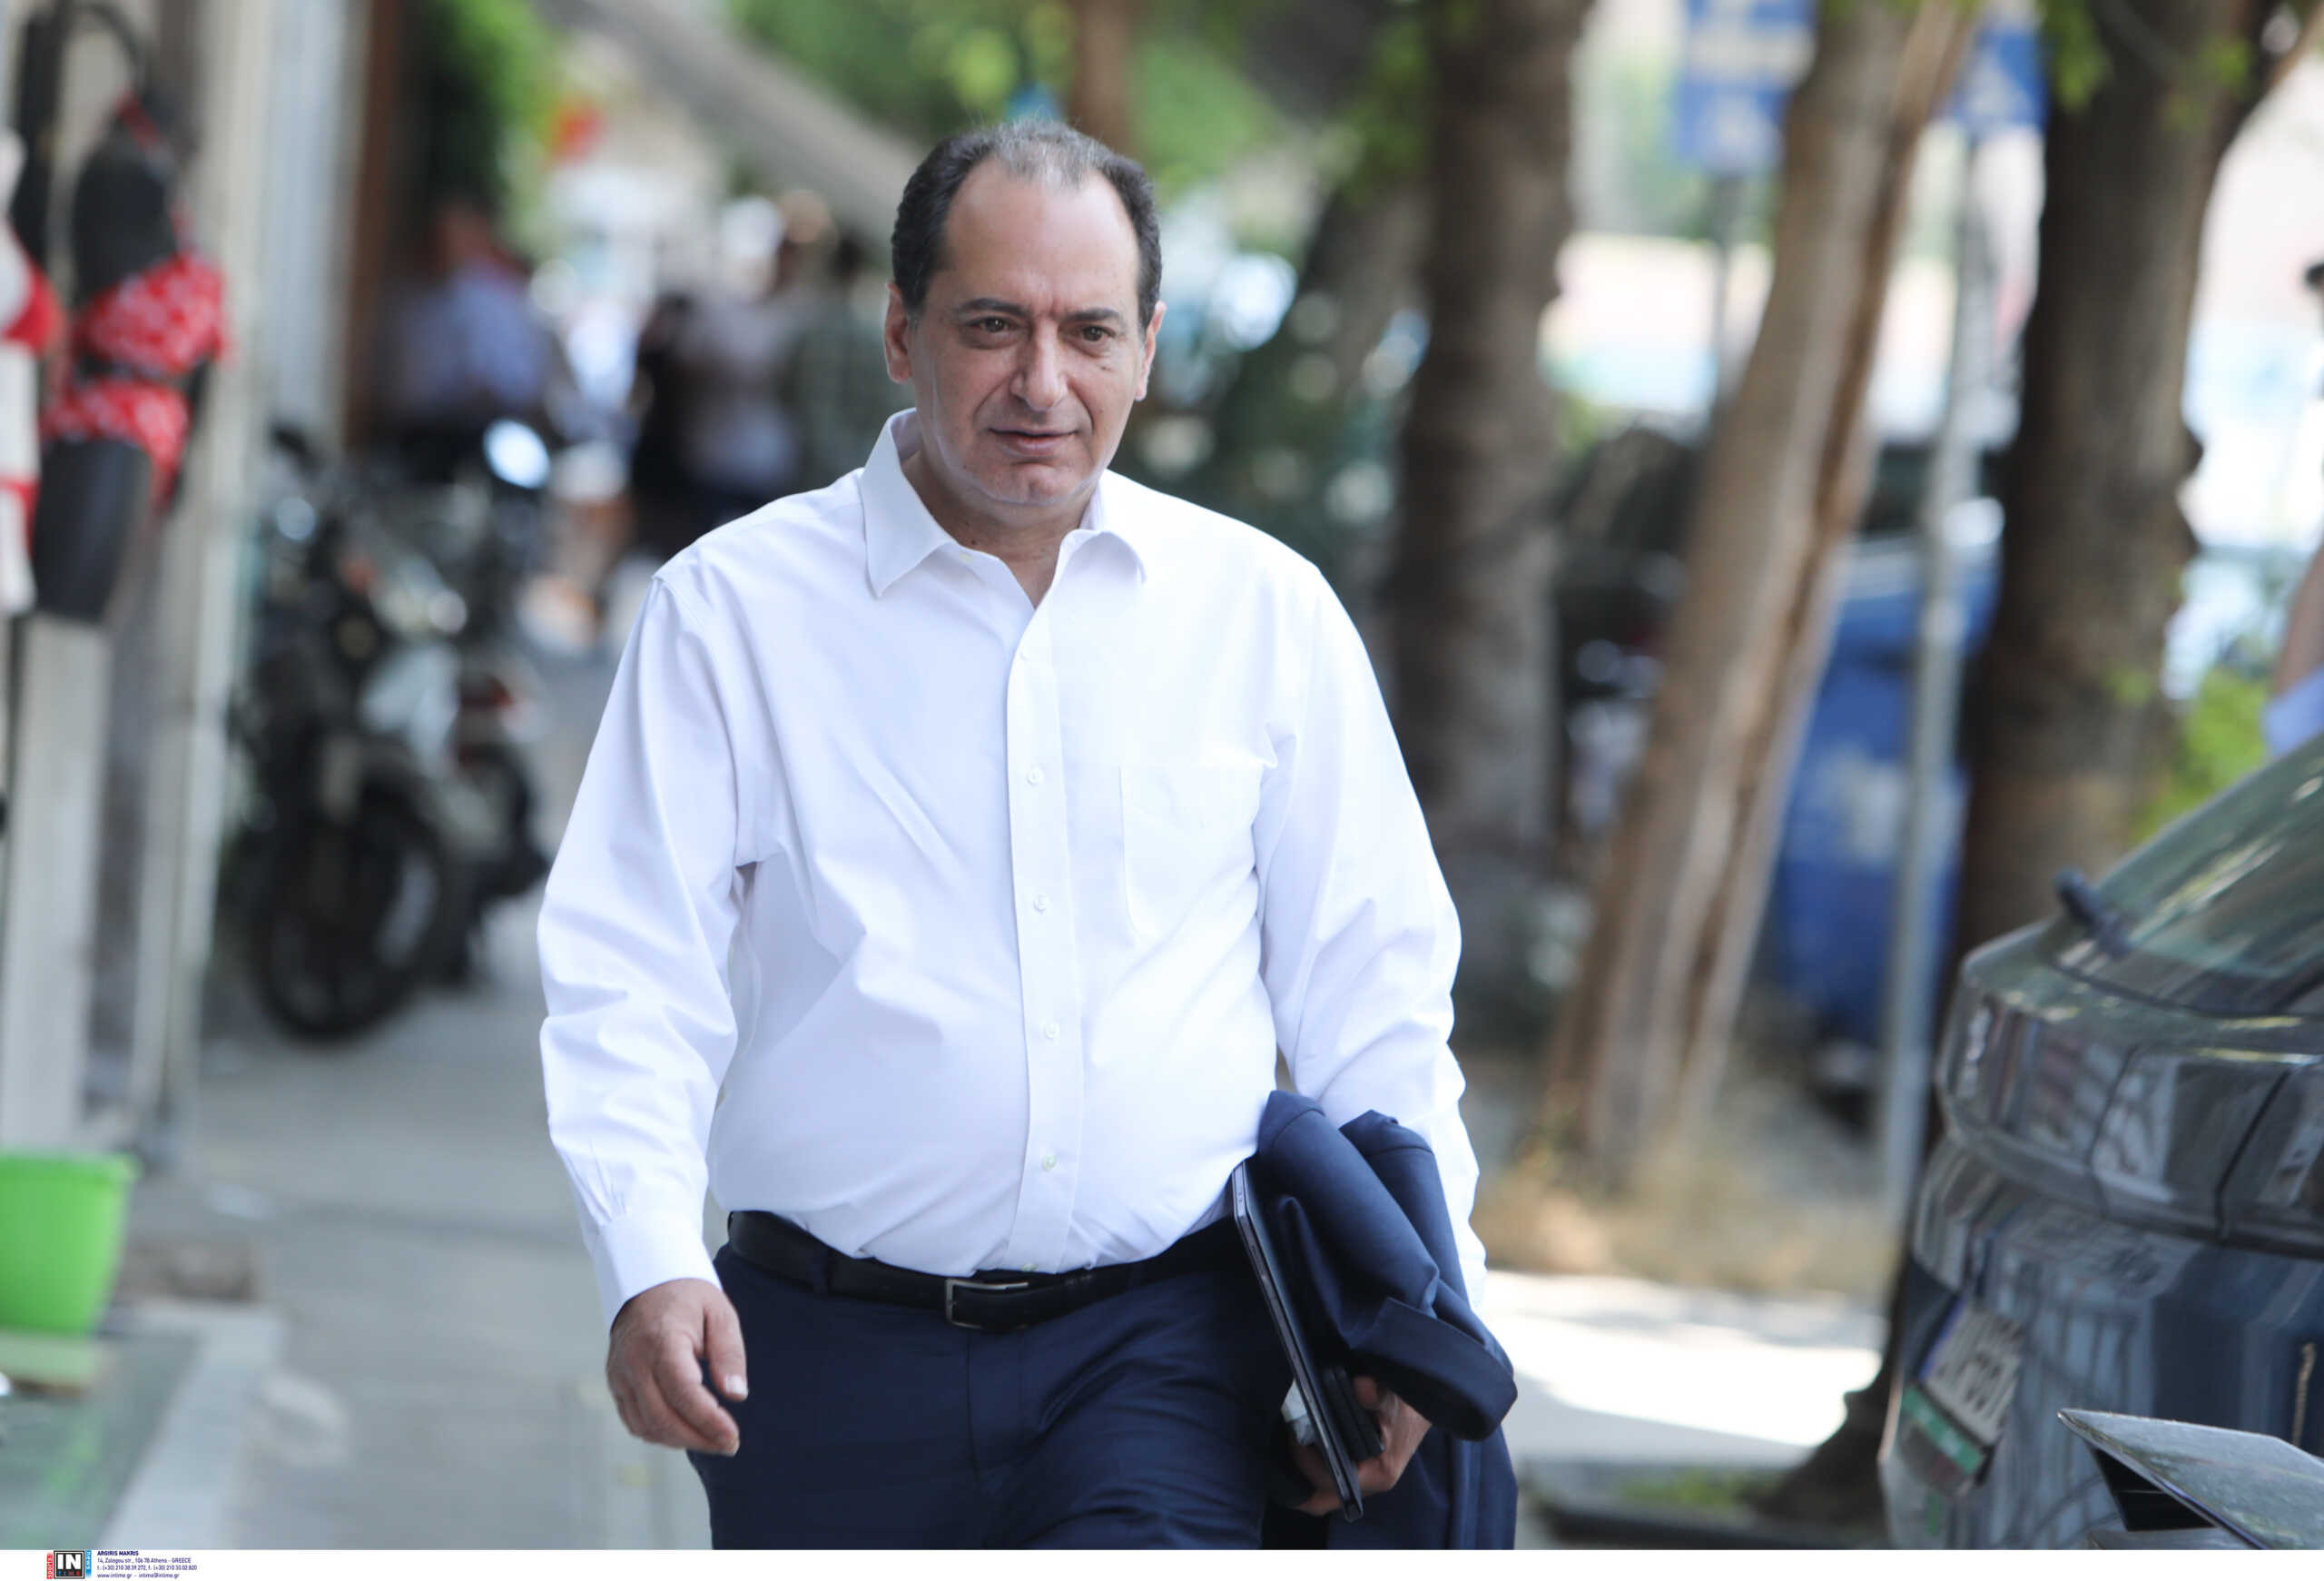 ΣΥΡΙΖΑ-ΠΣ: Δηλώσεις Τσίπρα στο Ζάππειο στις 12:30 - Τρία σενάρια για τις προθέσεις του